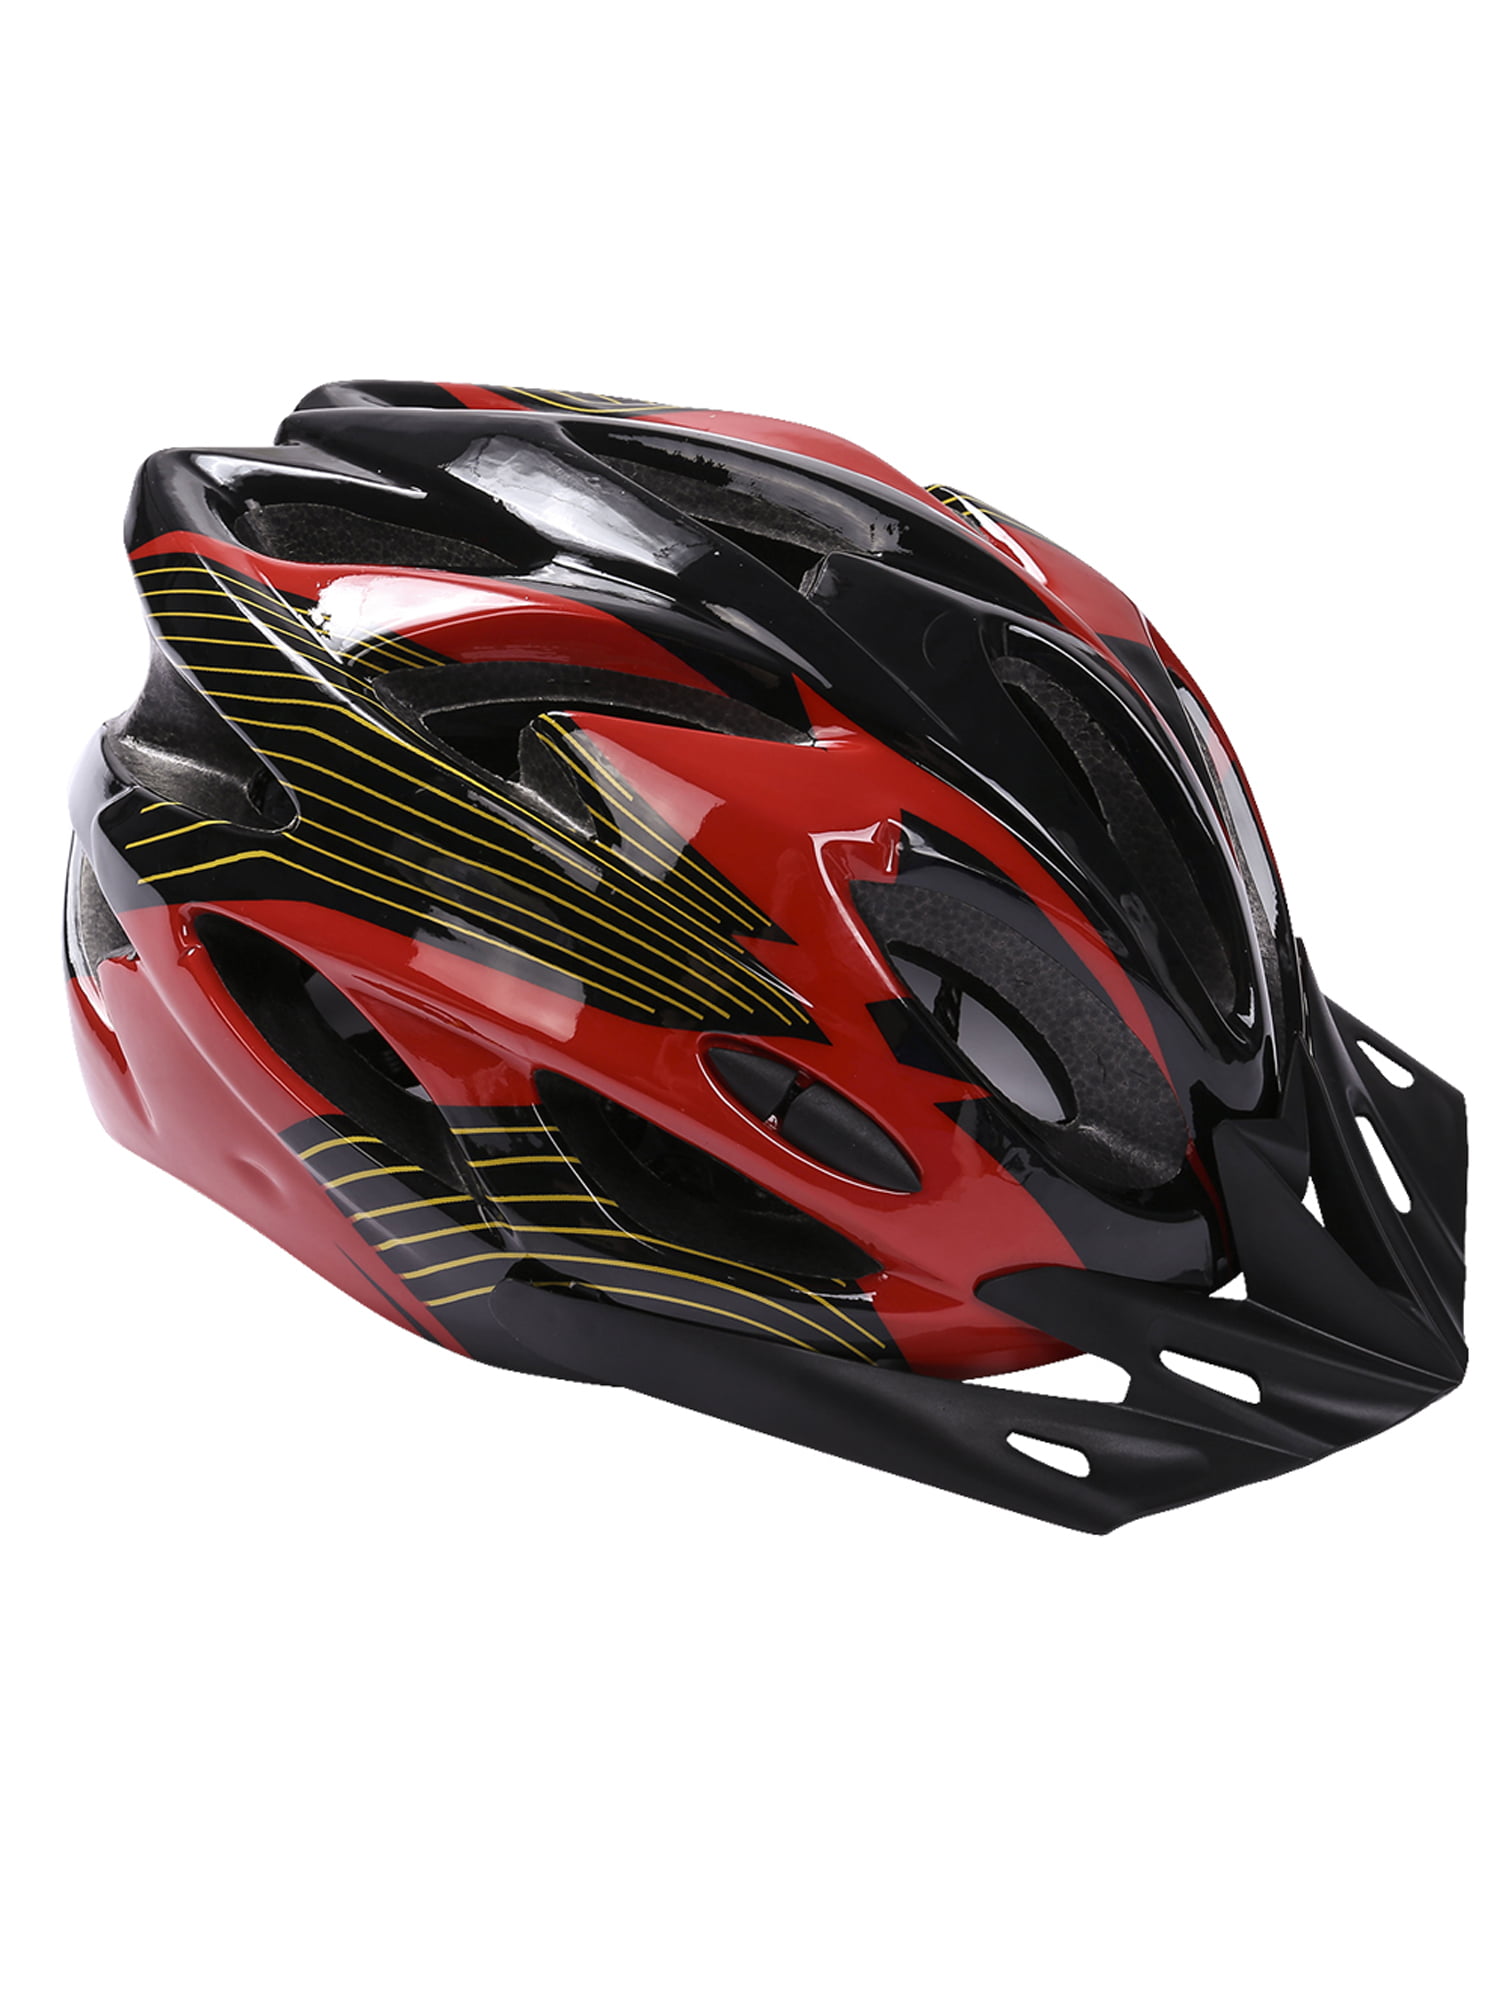 Adjustable Fafety Helmet Details about   Kids Bicycle Helmet Multi-purpose Helmet Red 